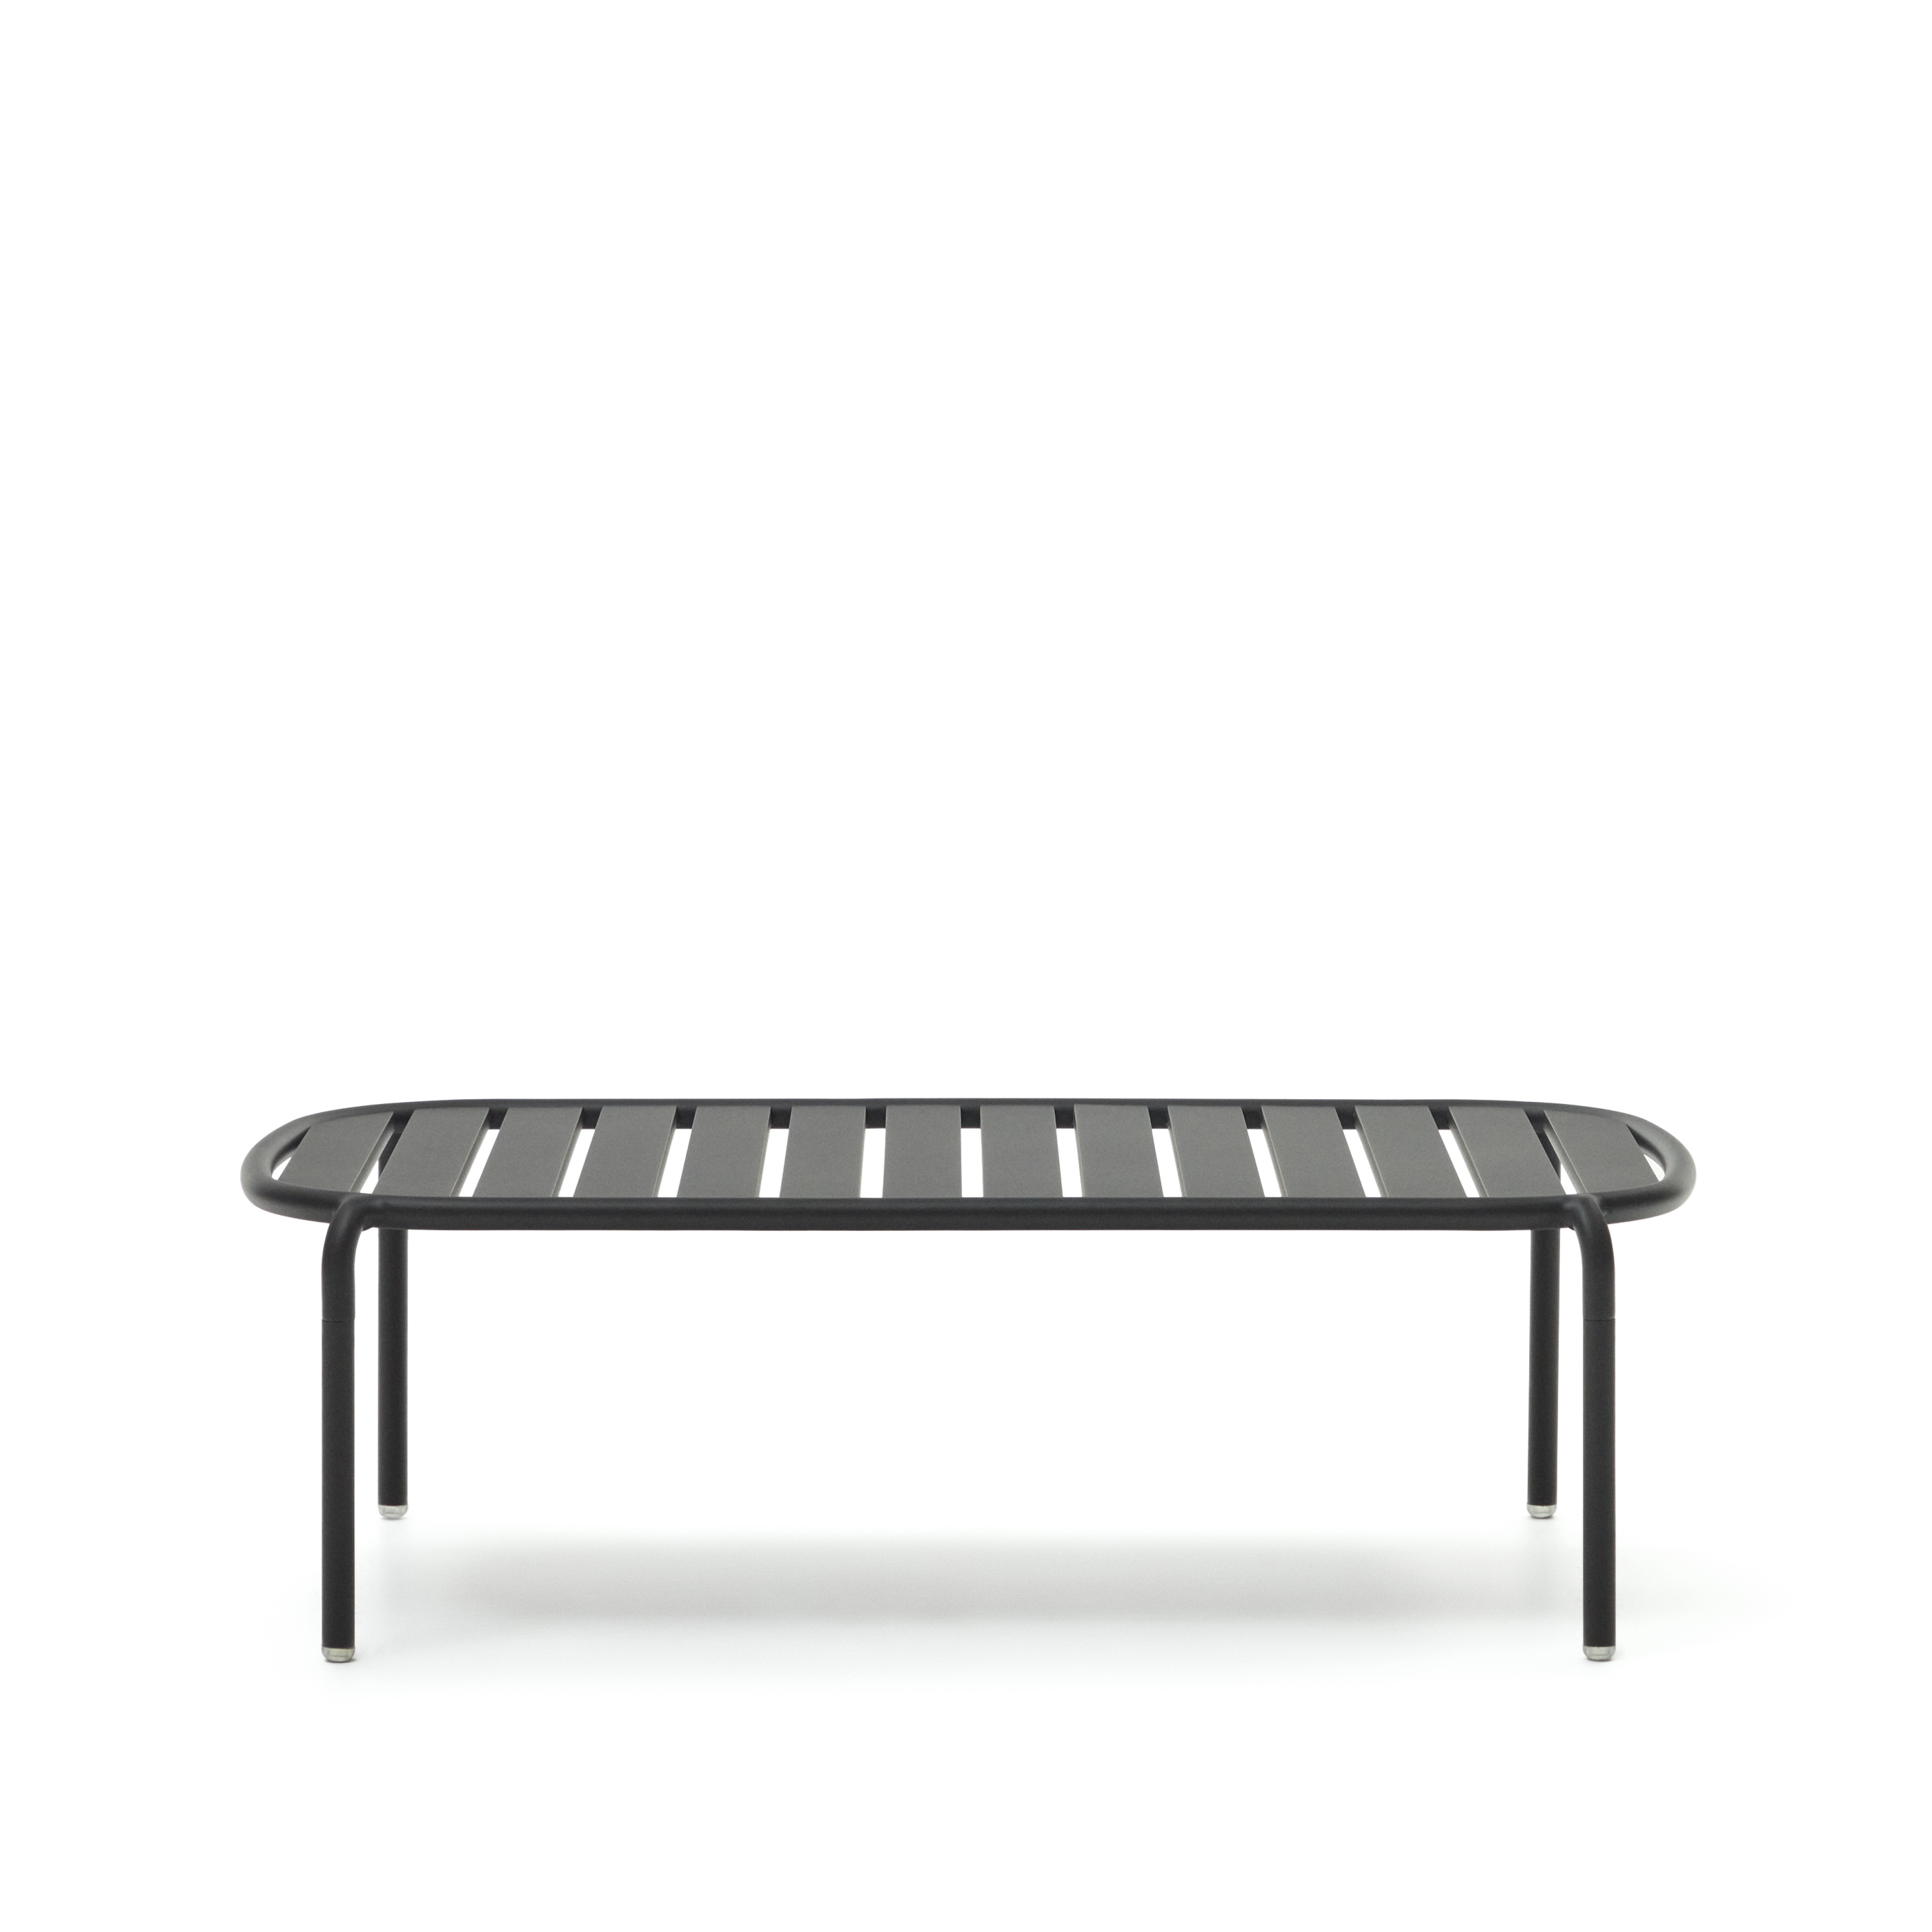 LAFORMA Joncols havebord, rektangulær - grå aluminium (113x65)